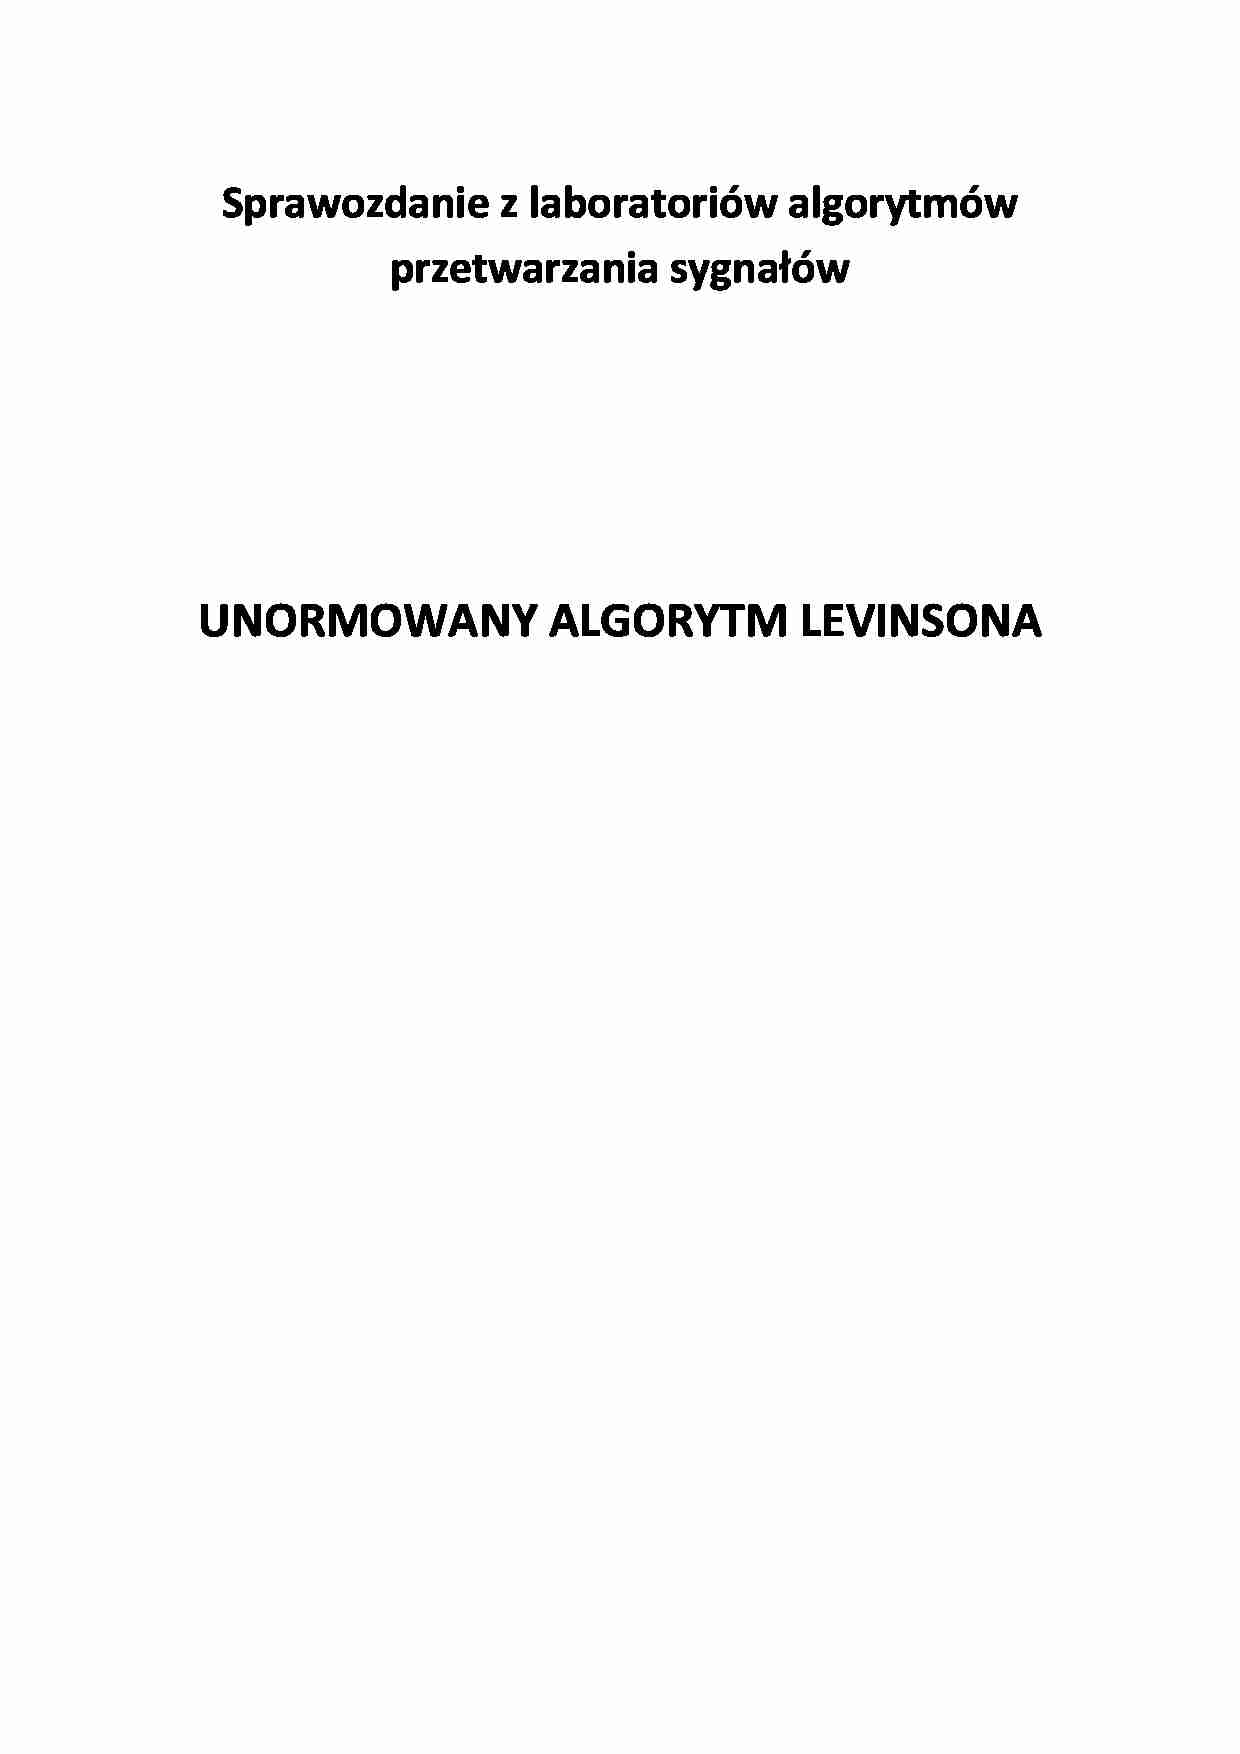 Unormowany algorytm Levinsona - sprawozdanie - strona 1